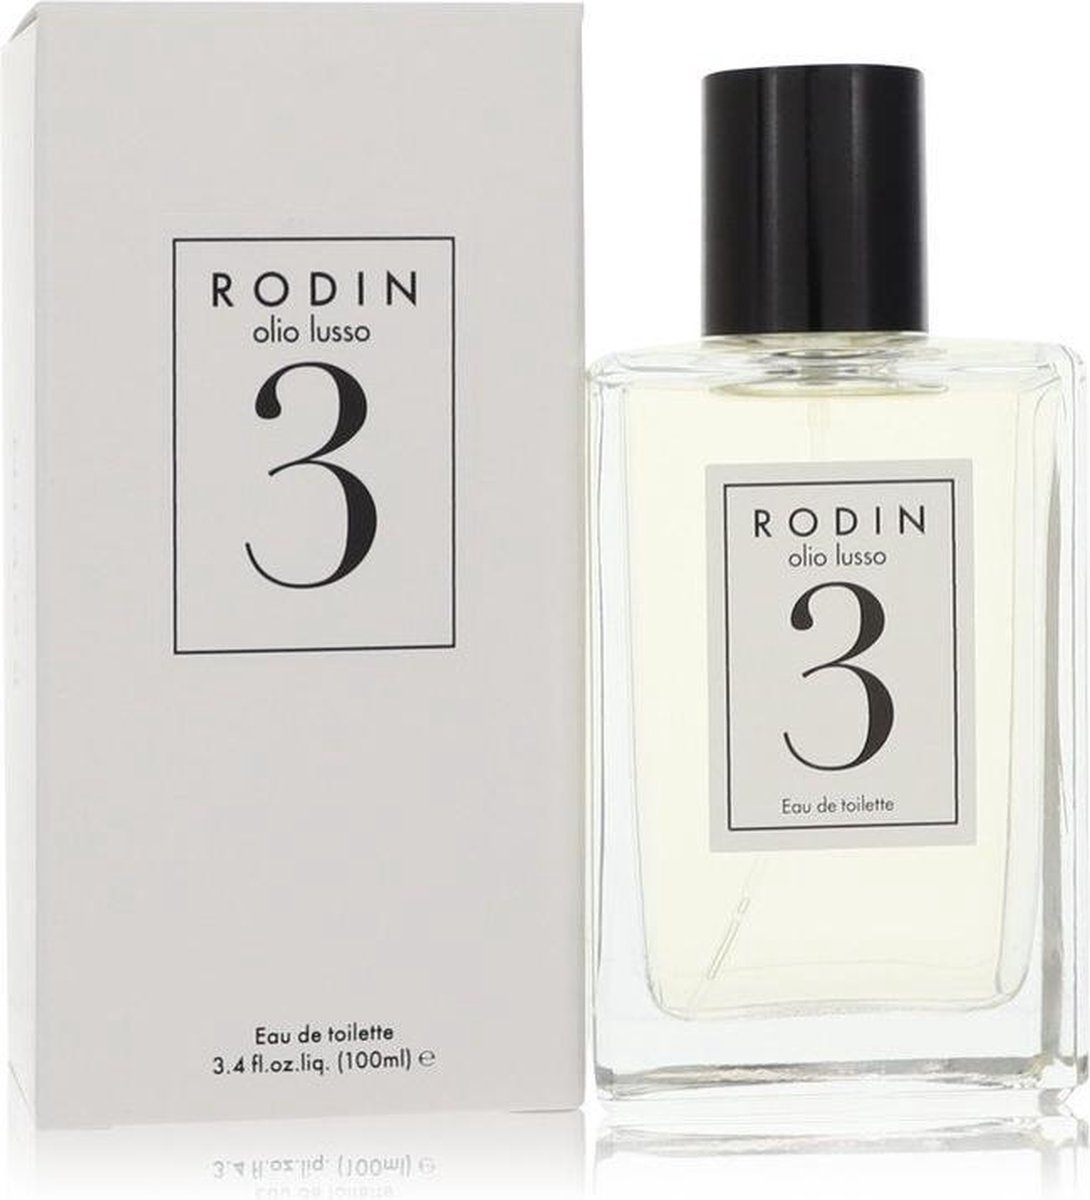 Rodin Olio Lusso 3 by Rodin 100 ml - Eau De Toilette Spray (Unisex)